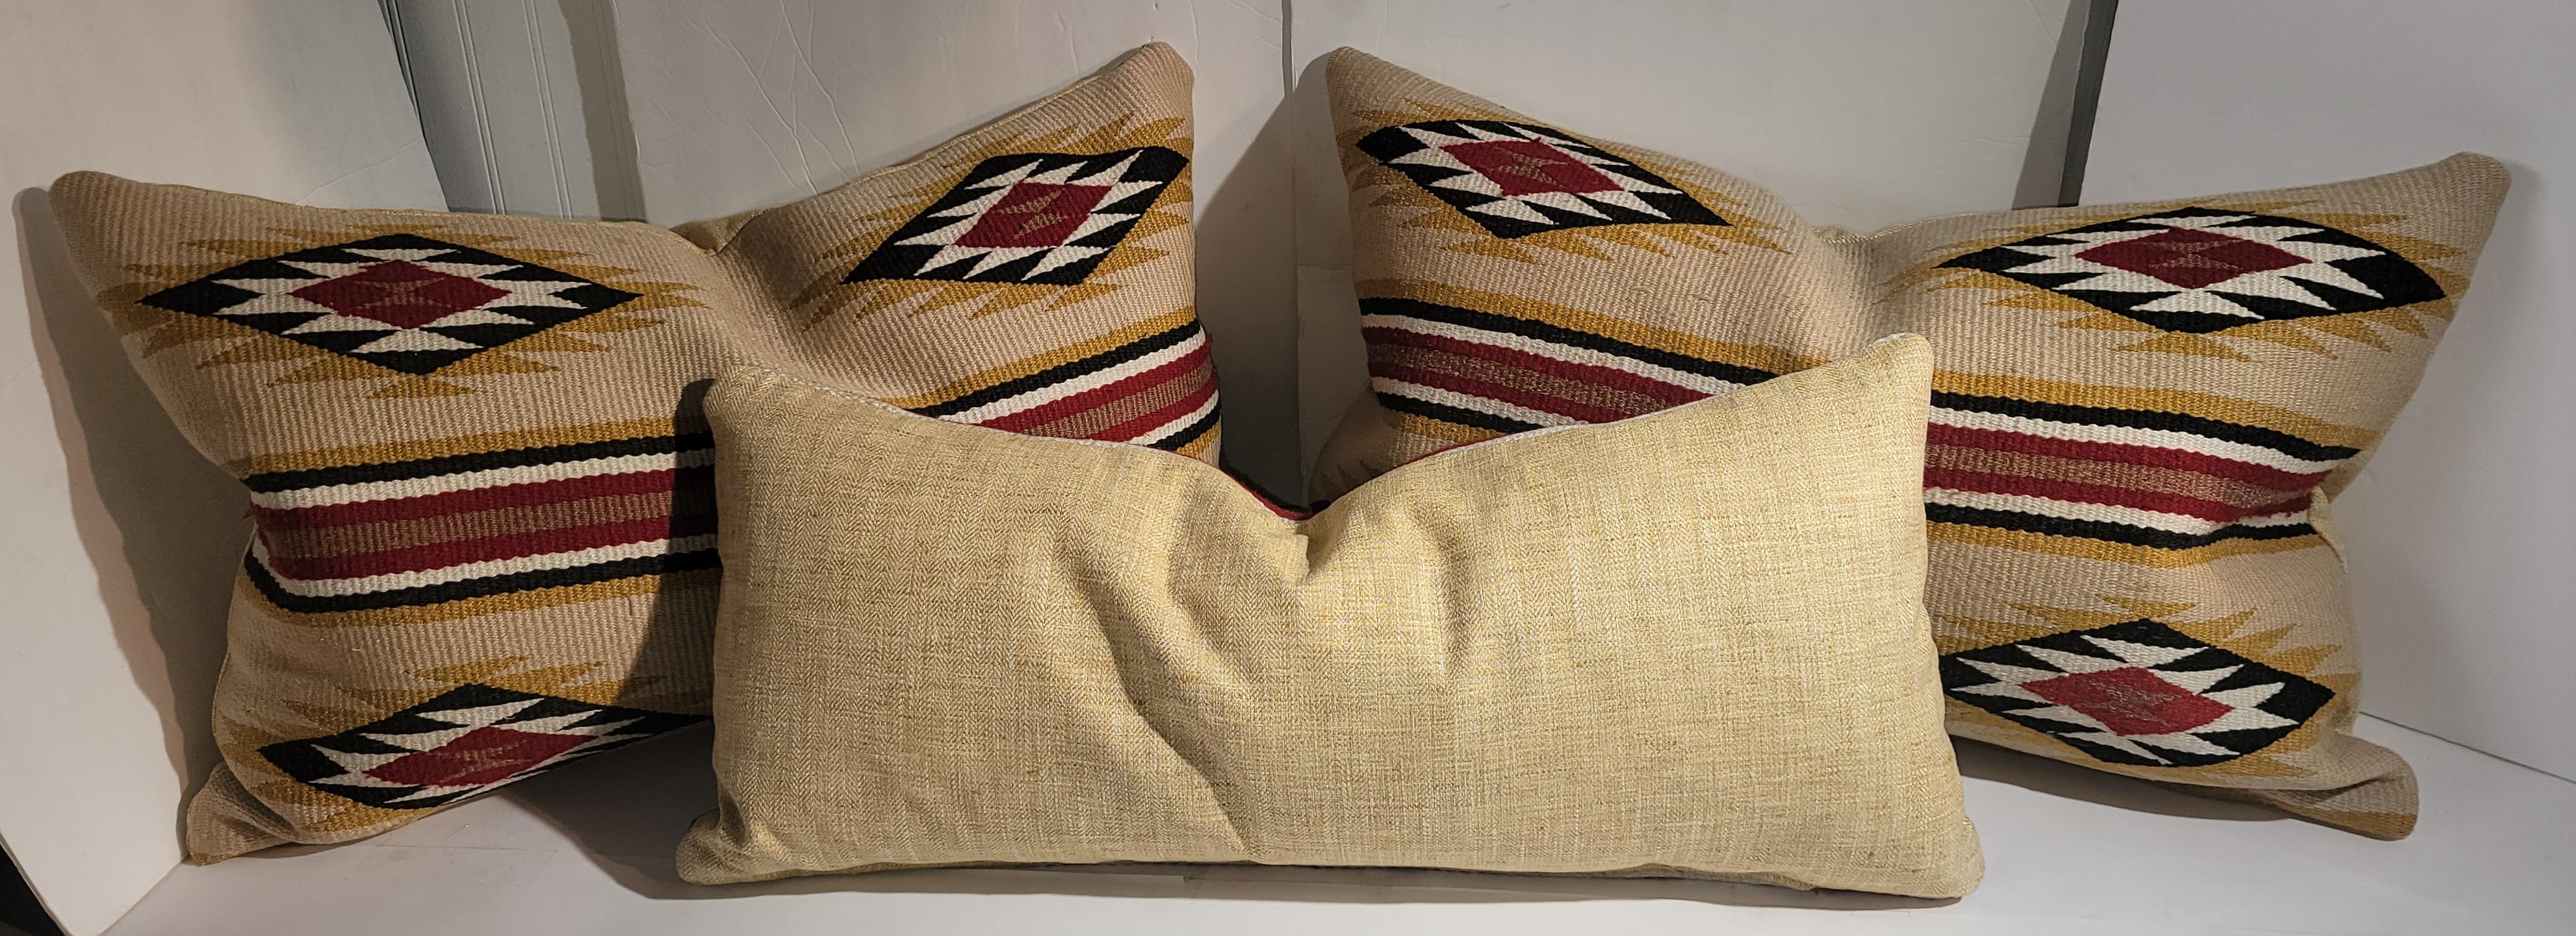 Ces coussins tissés par les indiens Navajo sont des Chinlies et ont tous un dos en lin jaune, les inserts sont en duvet et plumes. Tous en bon état. Vendu en groupe de trois coussins.

les plus grands oreillers mesurent 27x 16,5 chacun 
le plus